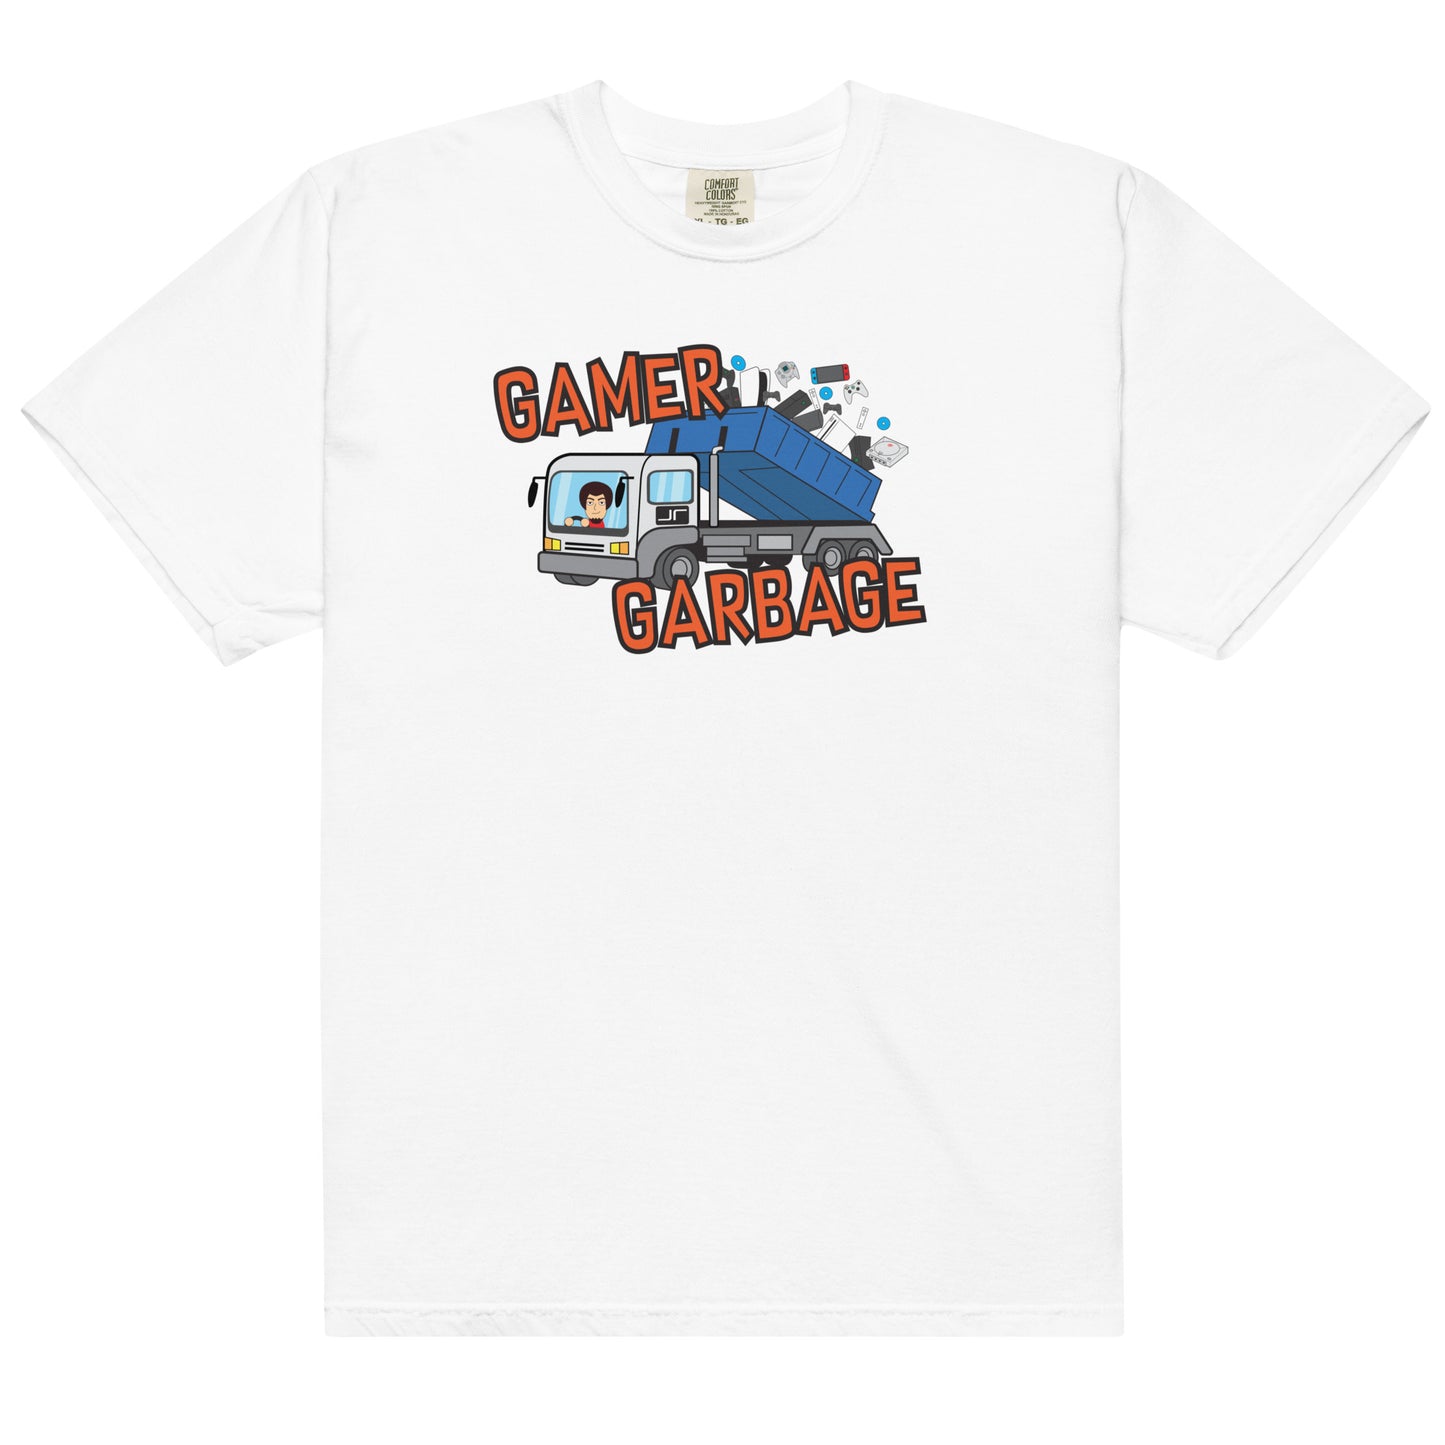 The Gamer Garbage T-Shirt